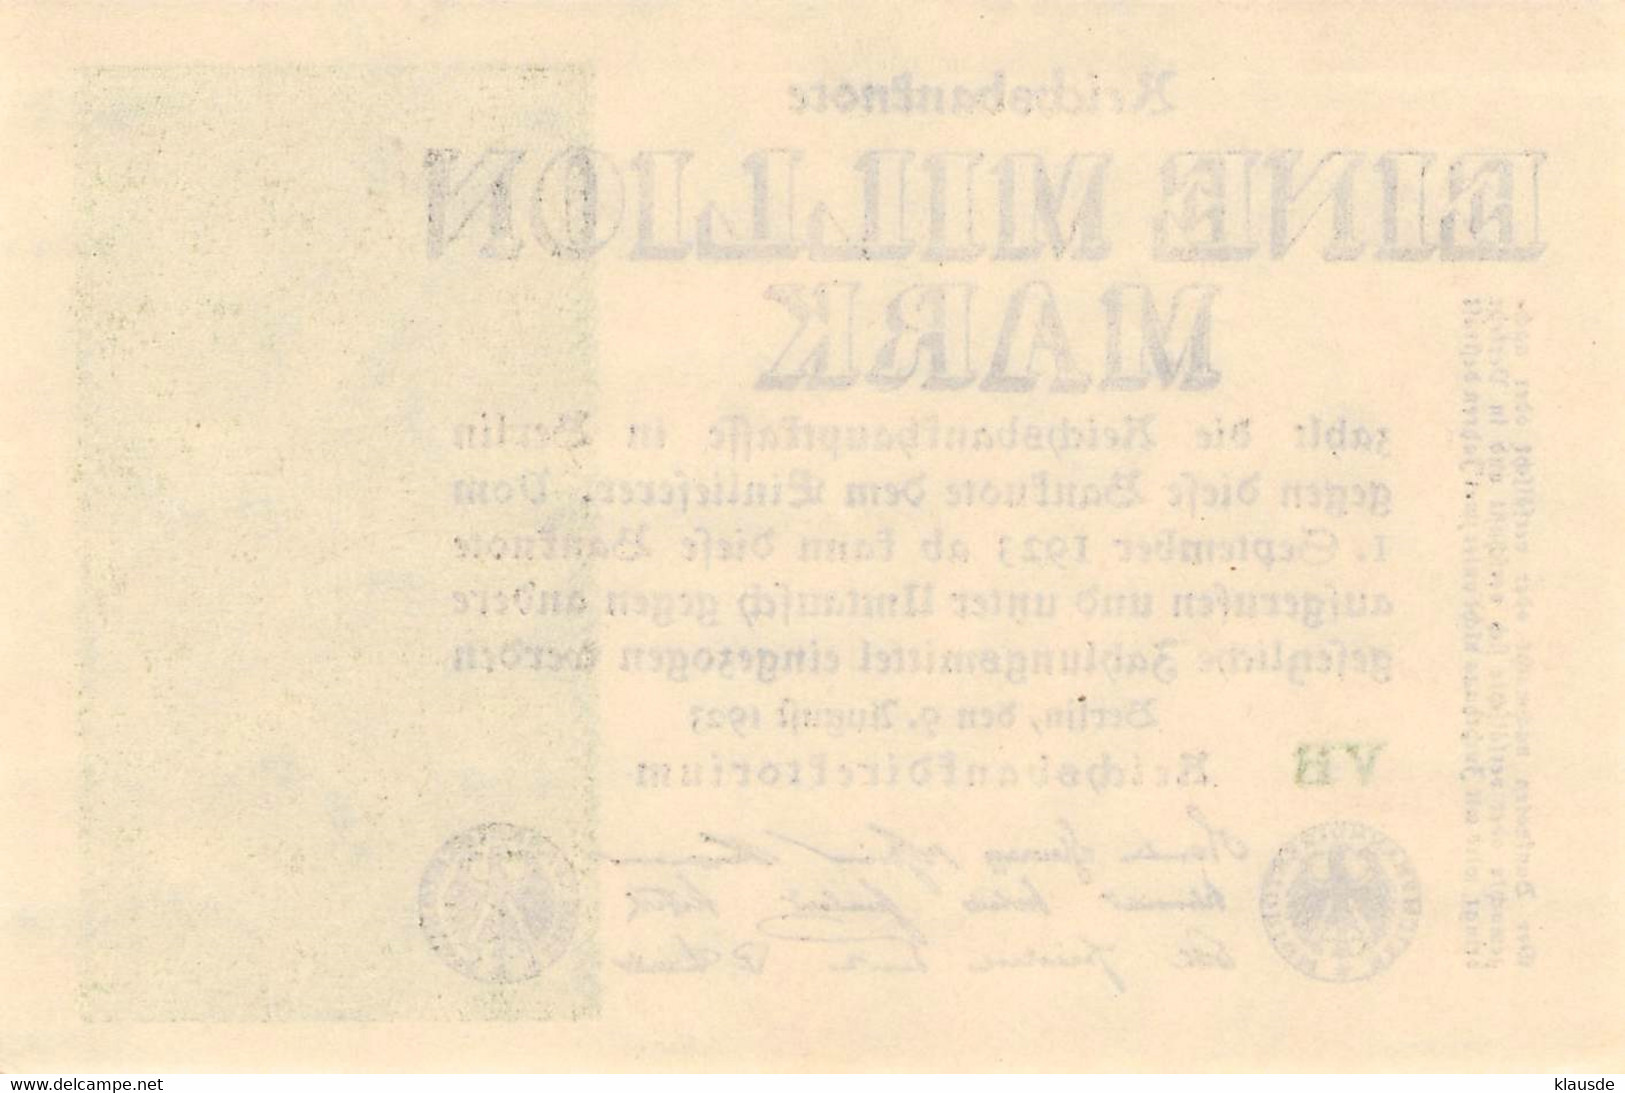 1 Mio Mark Reichsbanknote 1923 AU/EF (II) - 1 Miljoen Mark